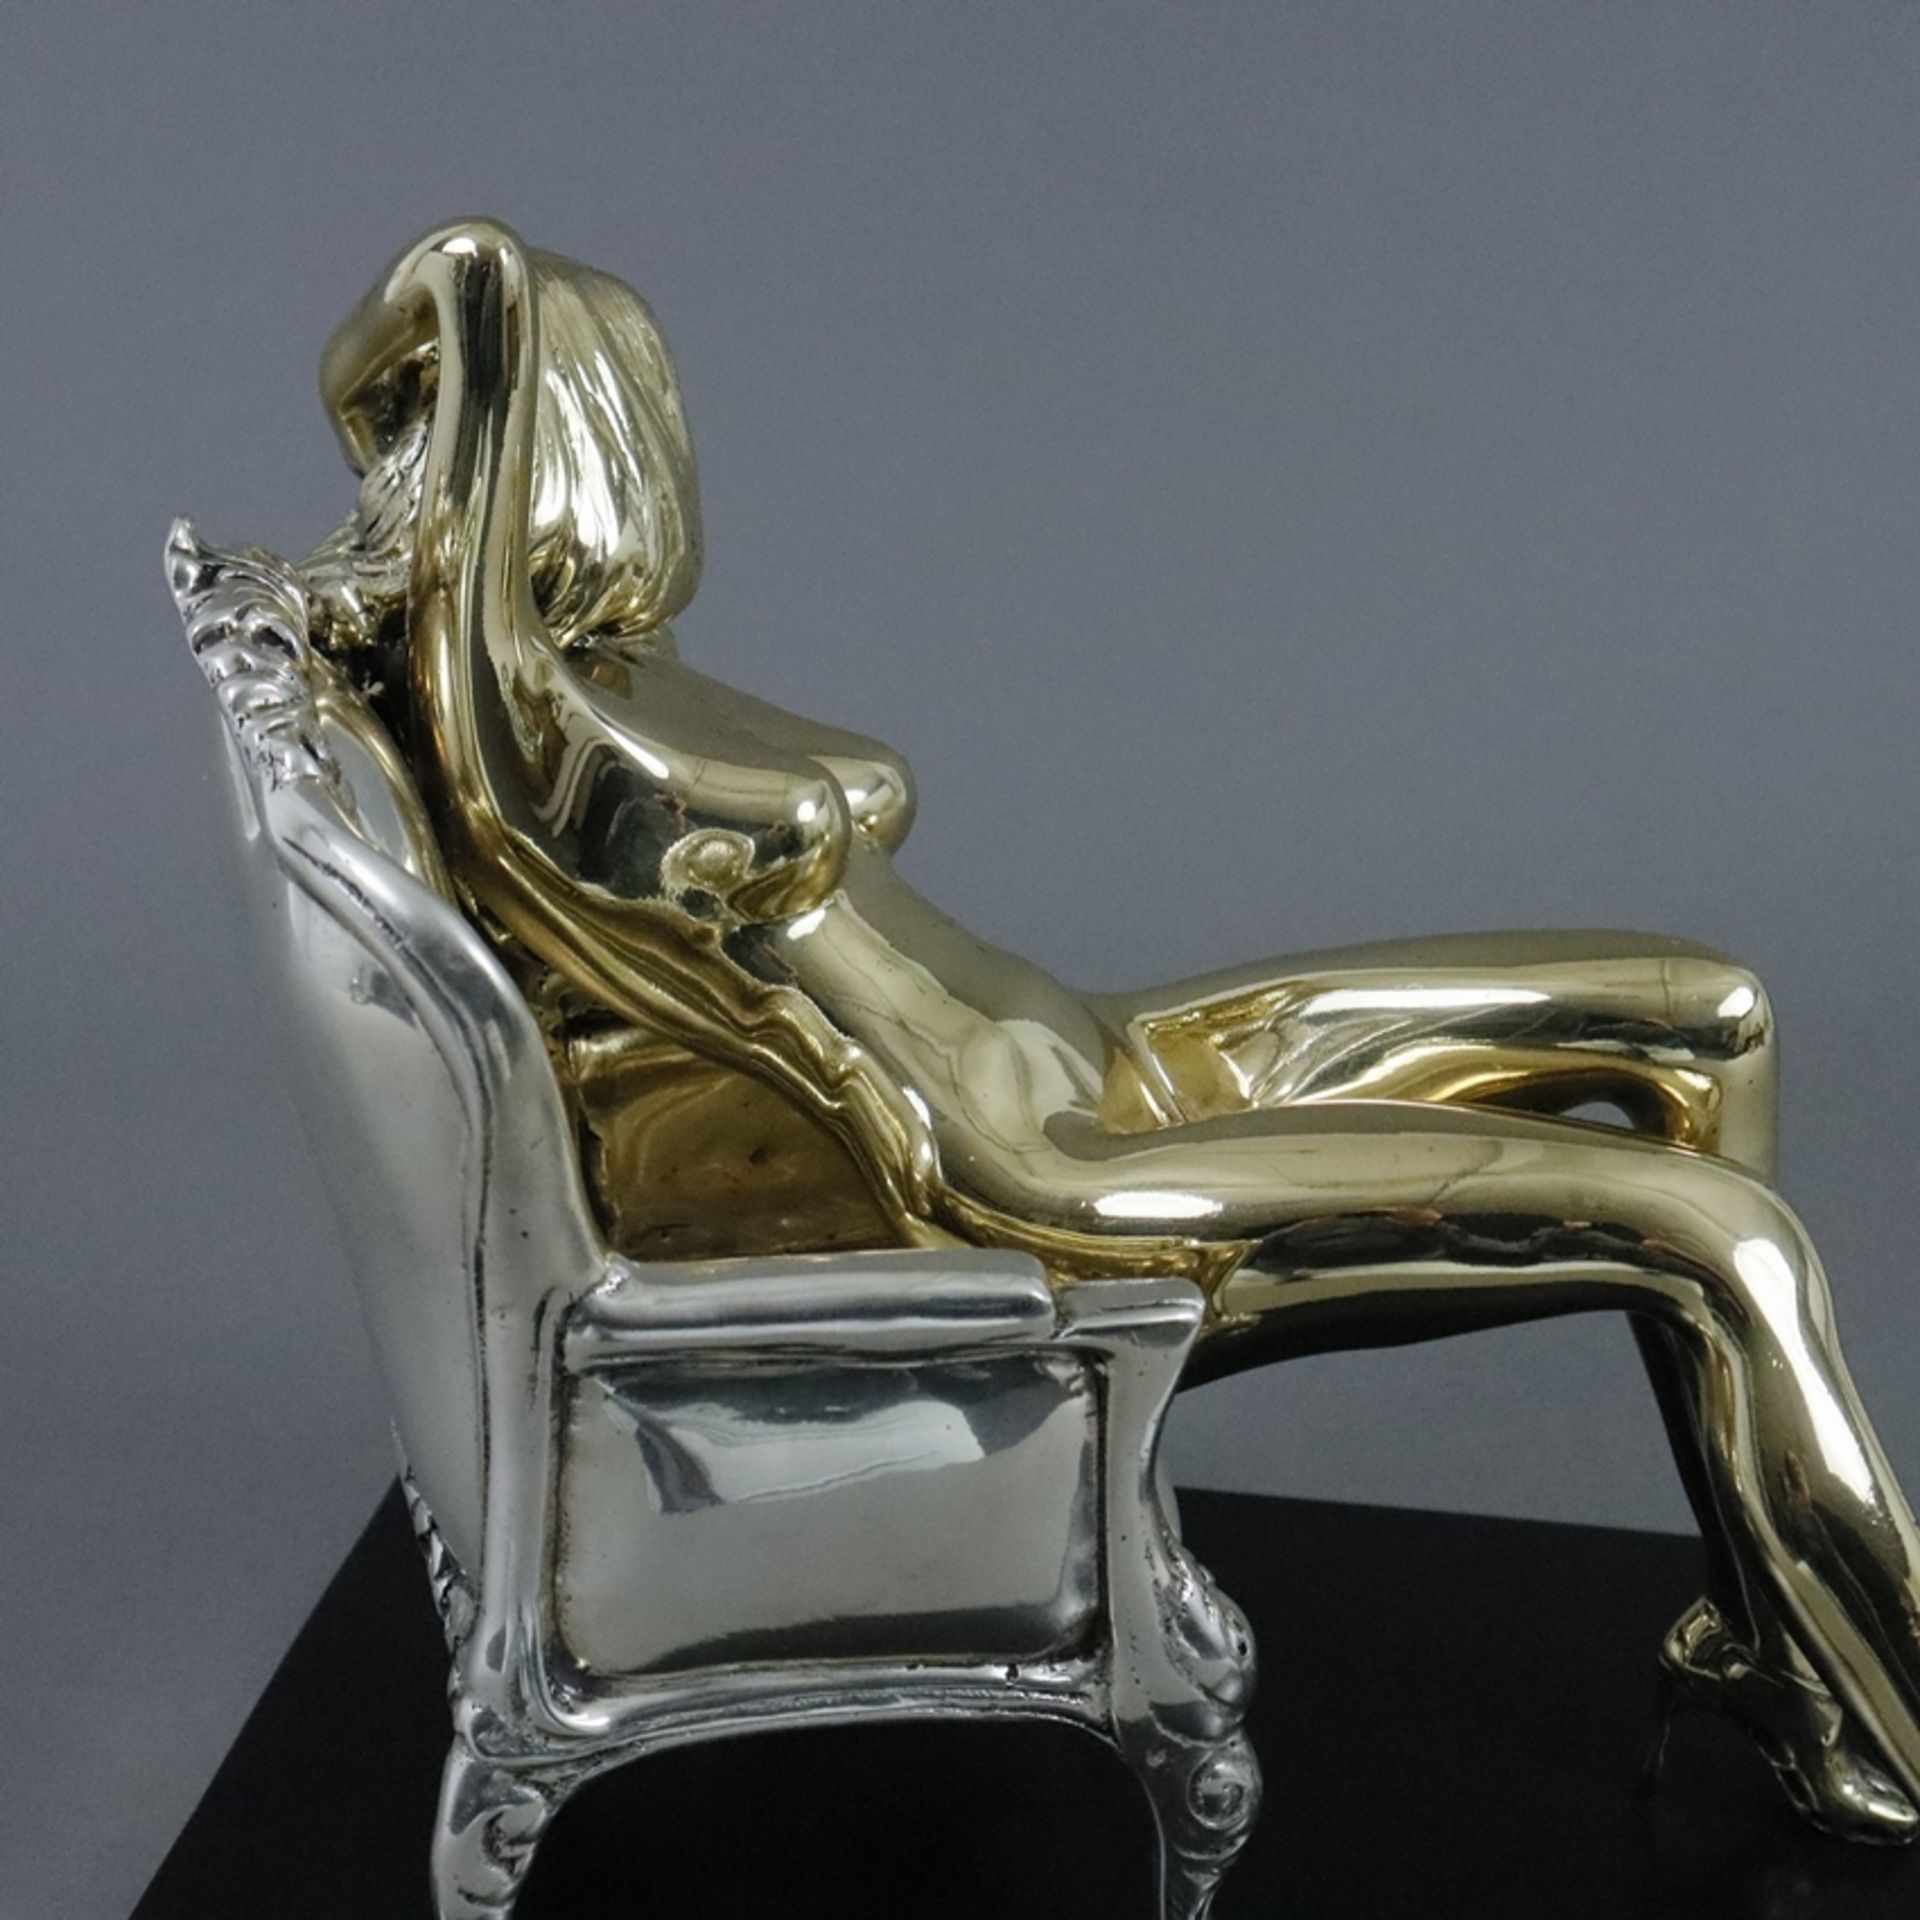 Erotische Frauenfigur 'Rosemary'' - exklusives Design, Damenakt in lasziver Pose auf Sessel, Messin - Image 7 of 9